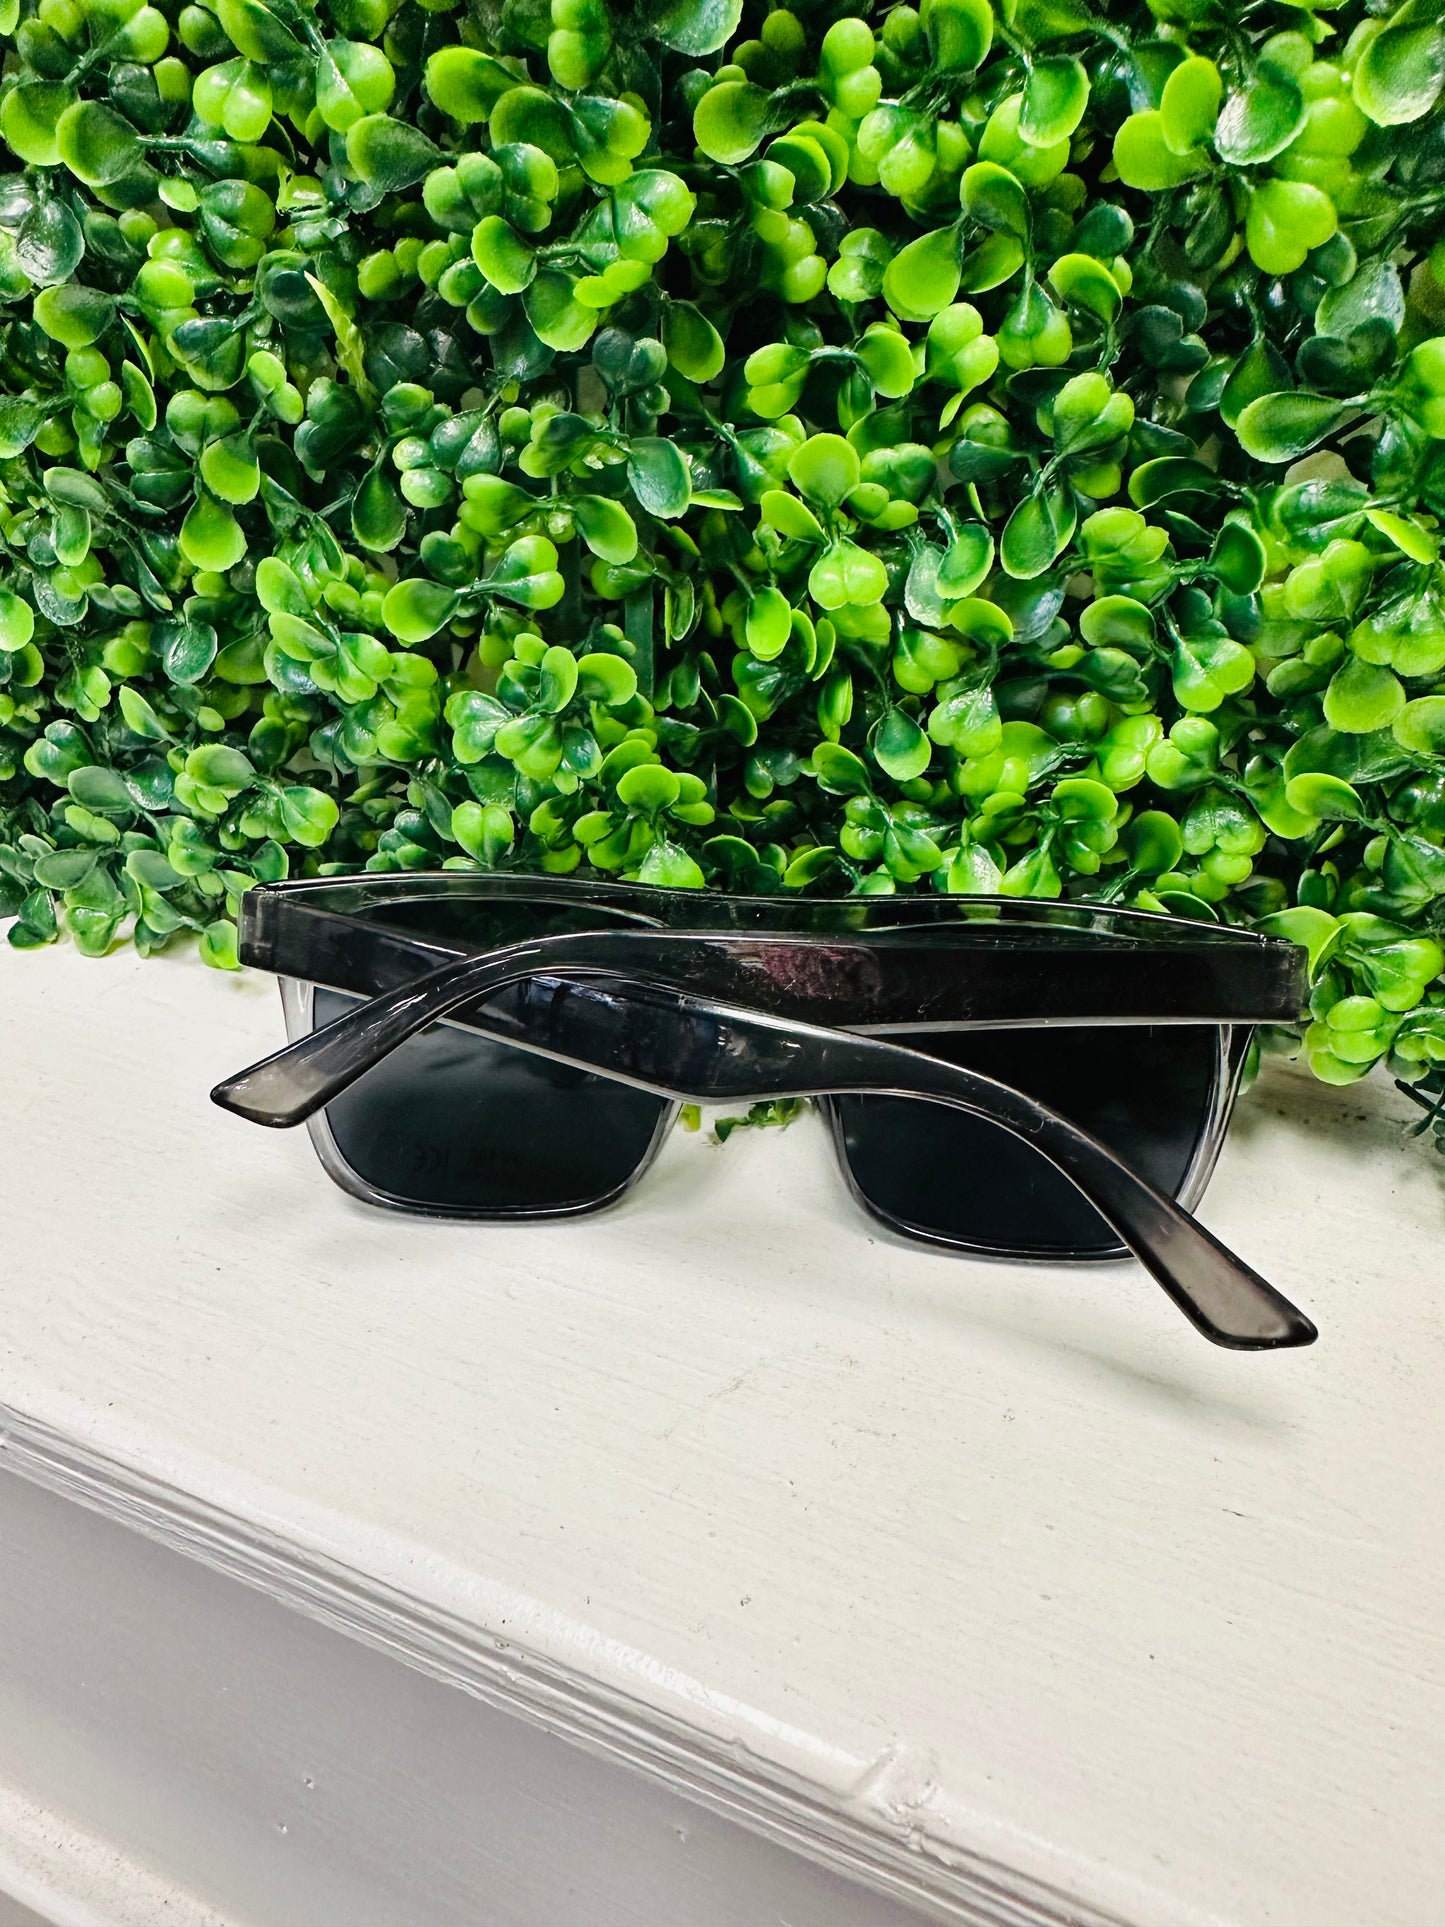 Gray Square Sunglasses